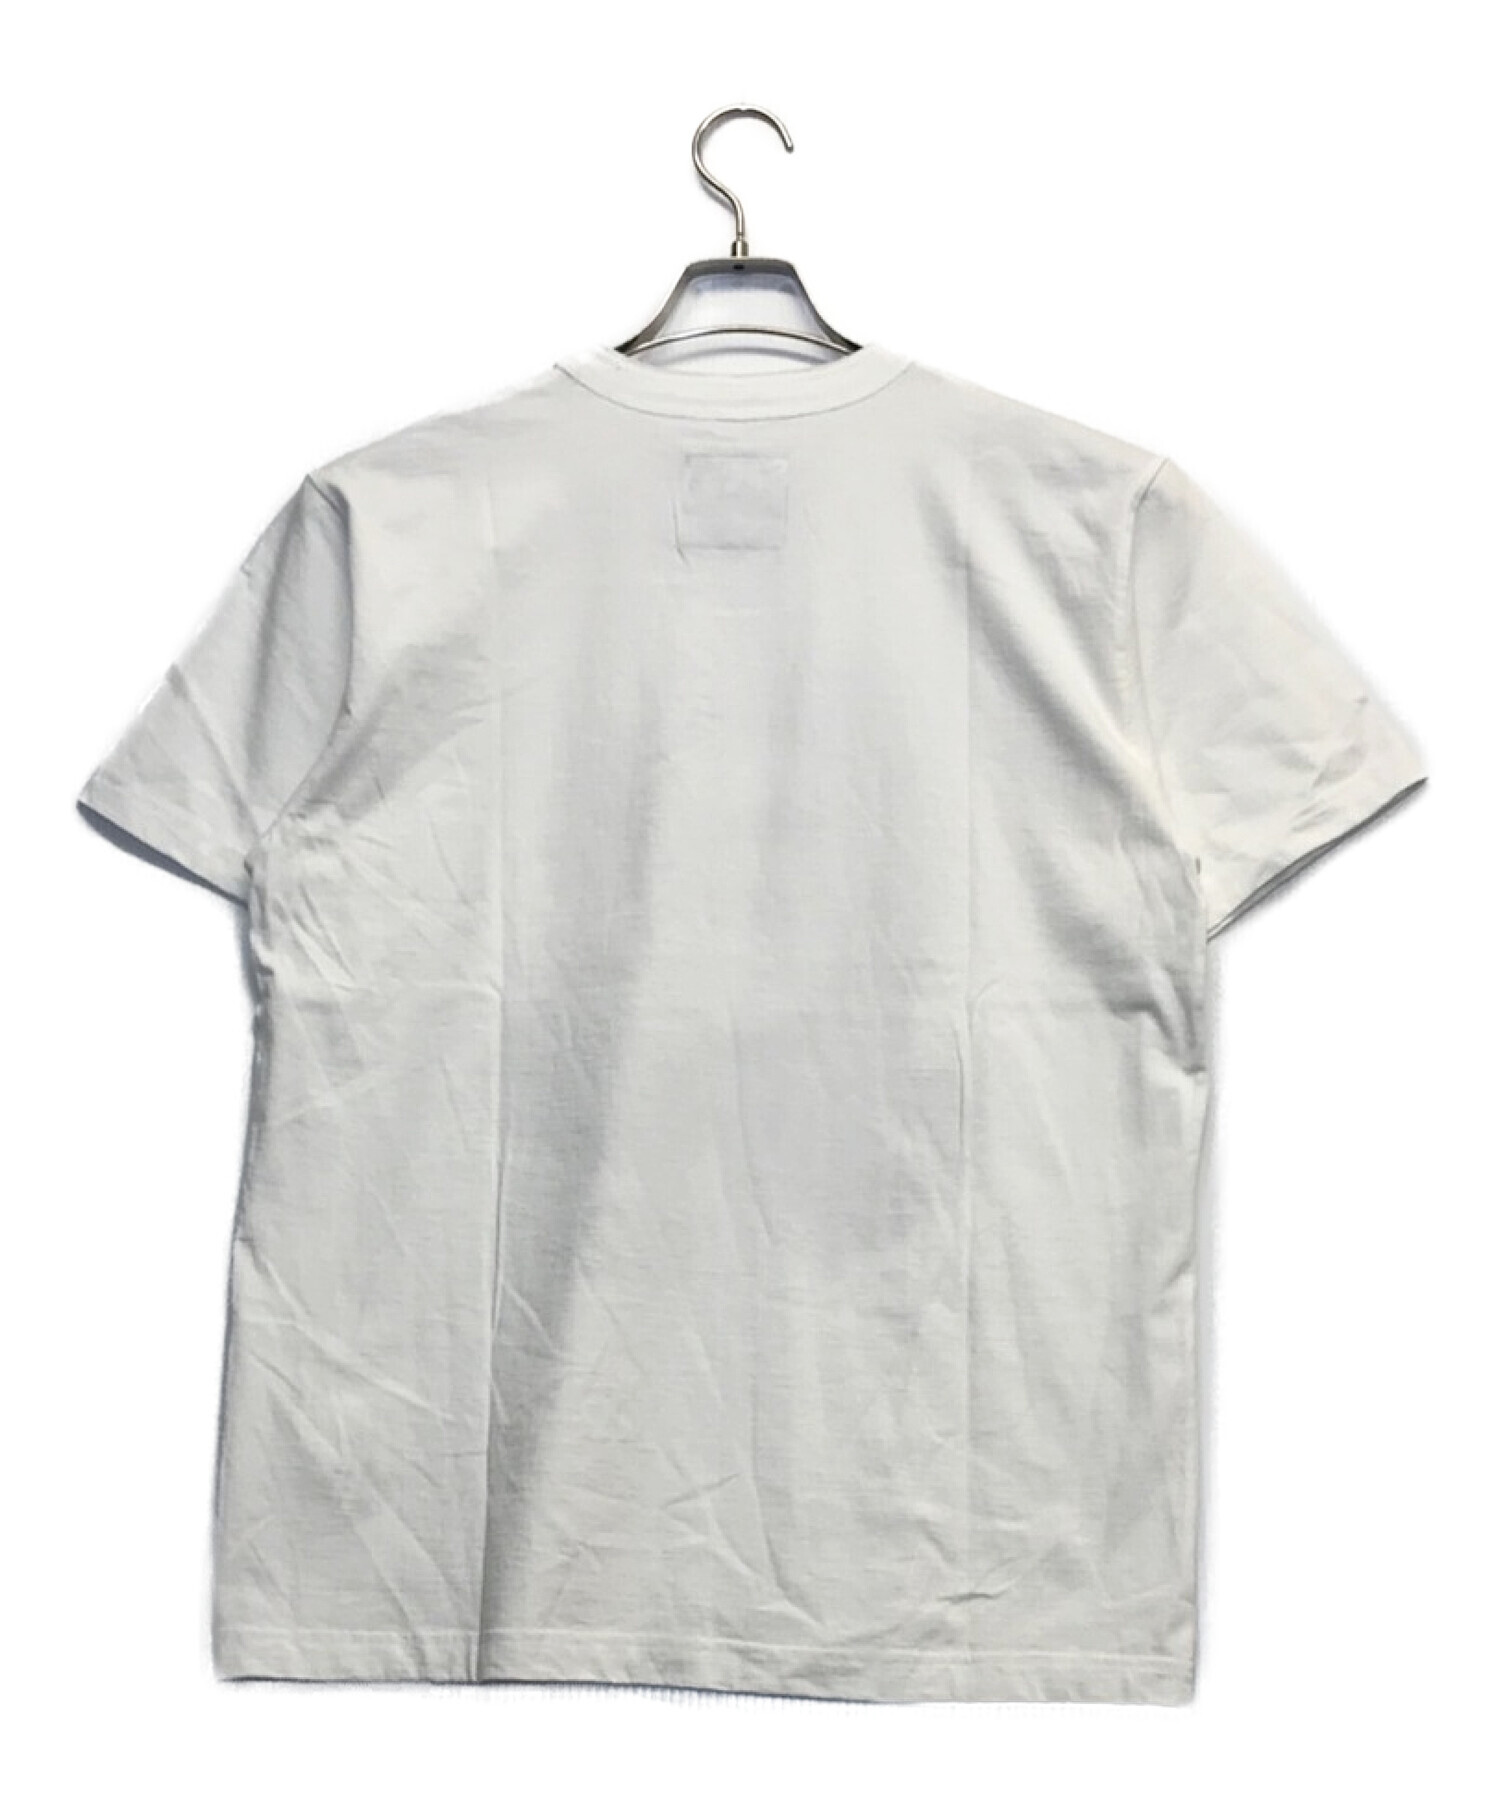 sacai (サカイ) UNDERCOVER (アンダーカバー) プリントTシャツ ホワイト サイズ:2